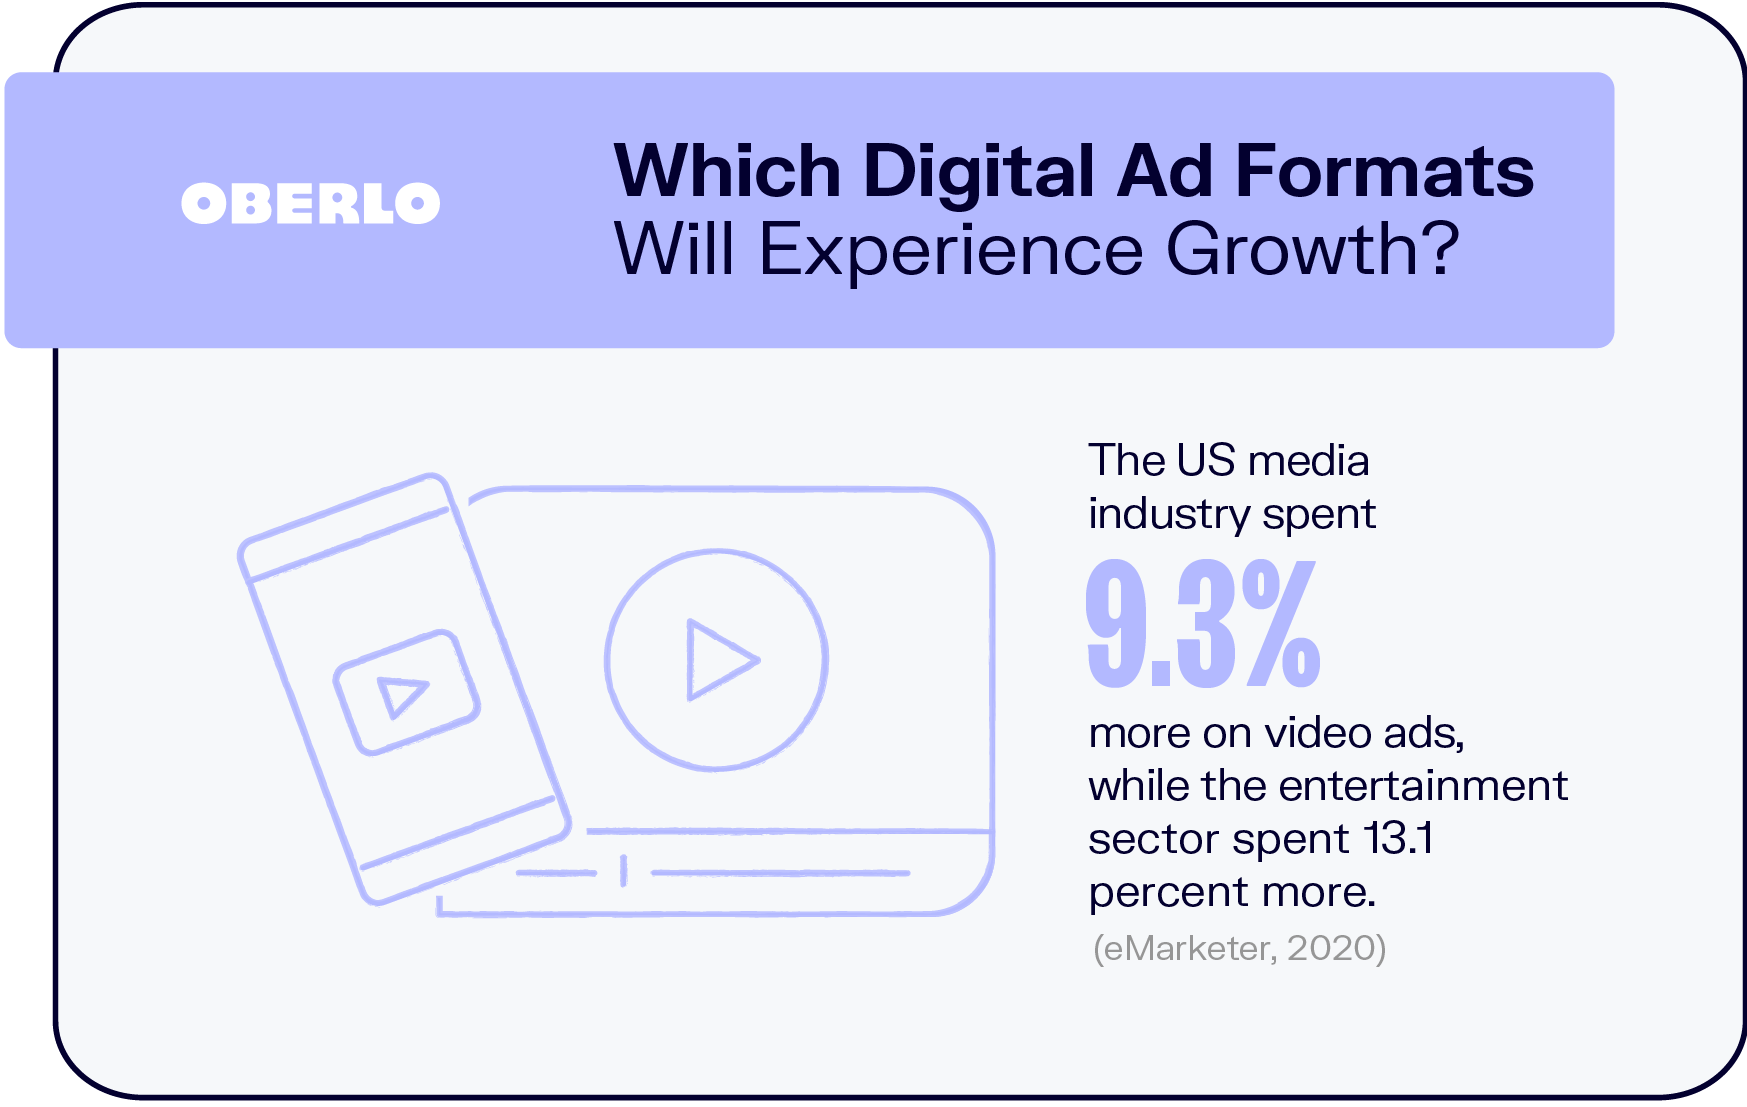 ¿Qué formatos de anuncios digitales experimentarán un crecimiento?